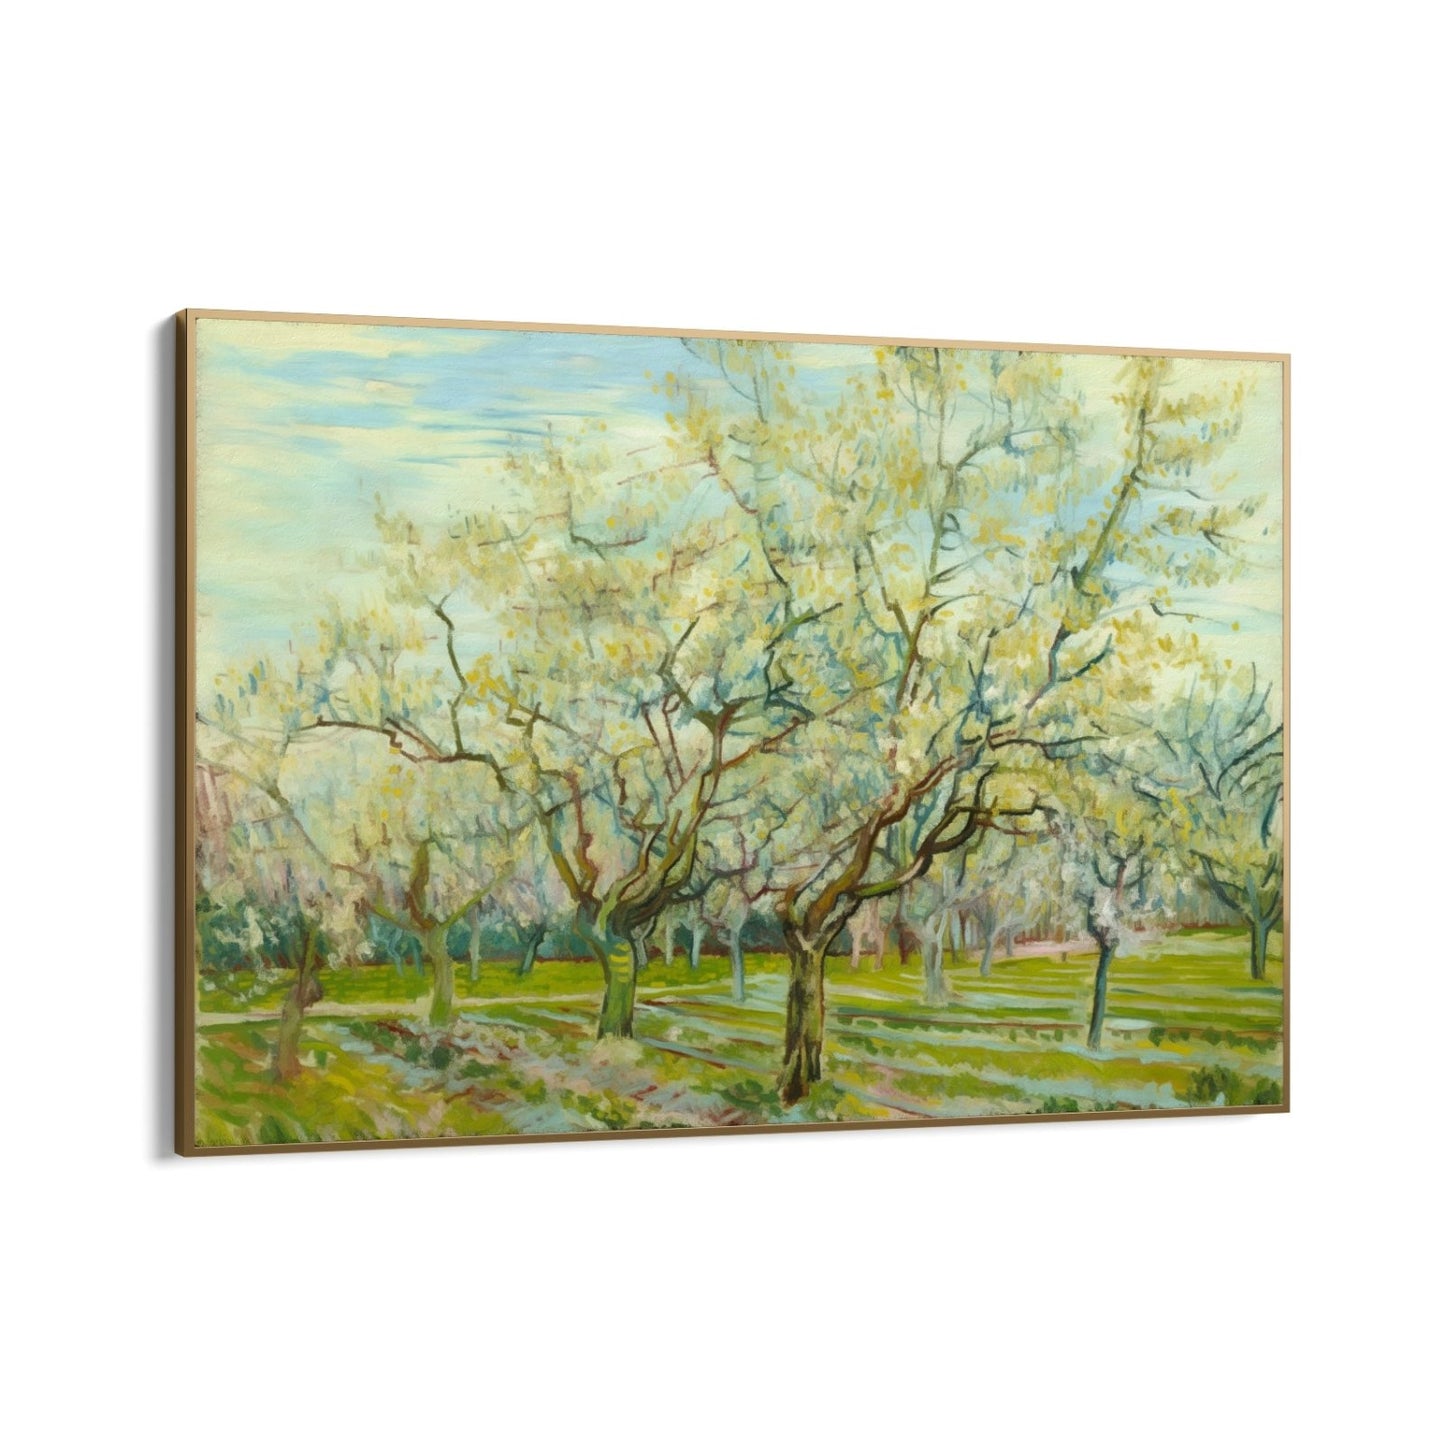 De witte boomgaard 1888, Vincent van Gogh